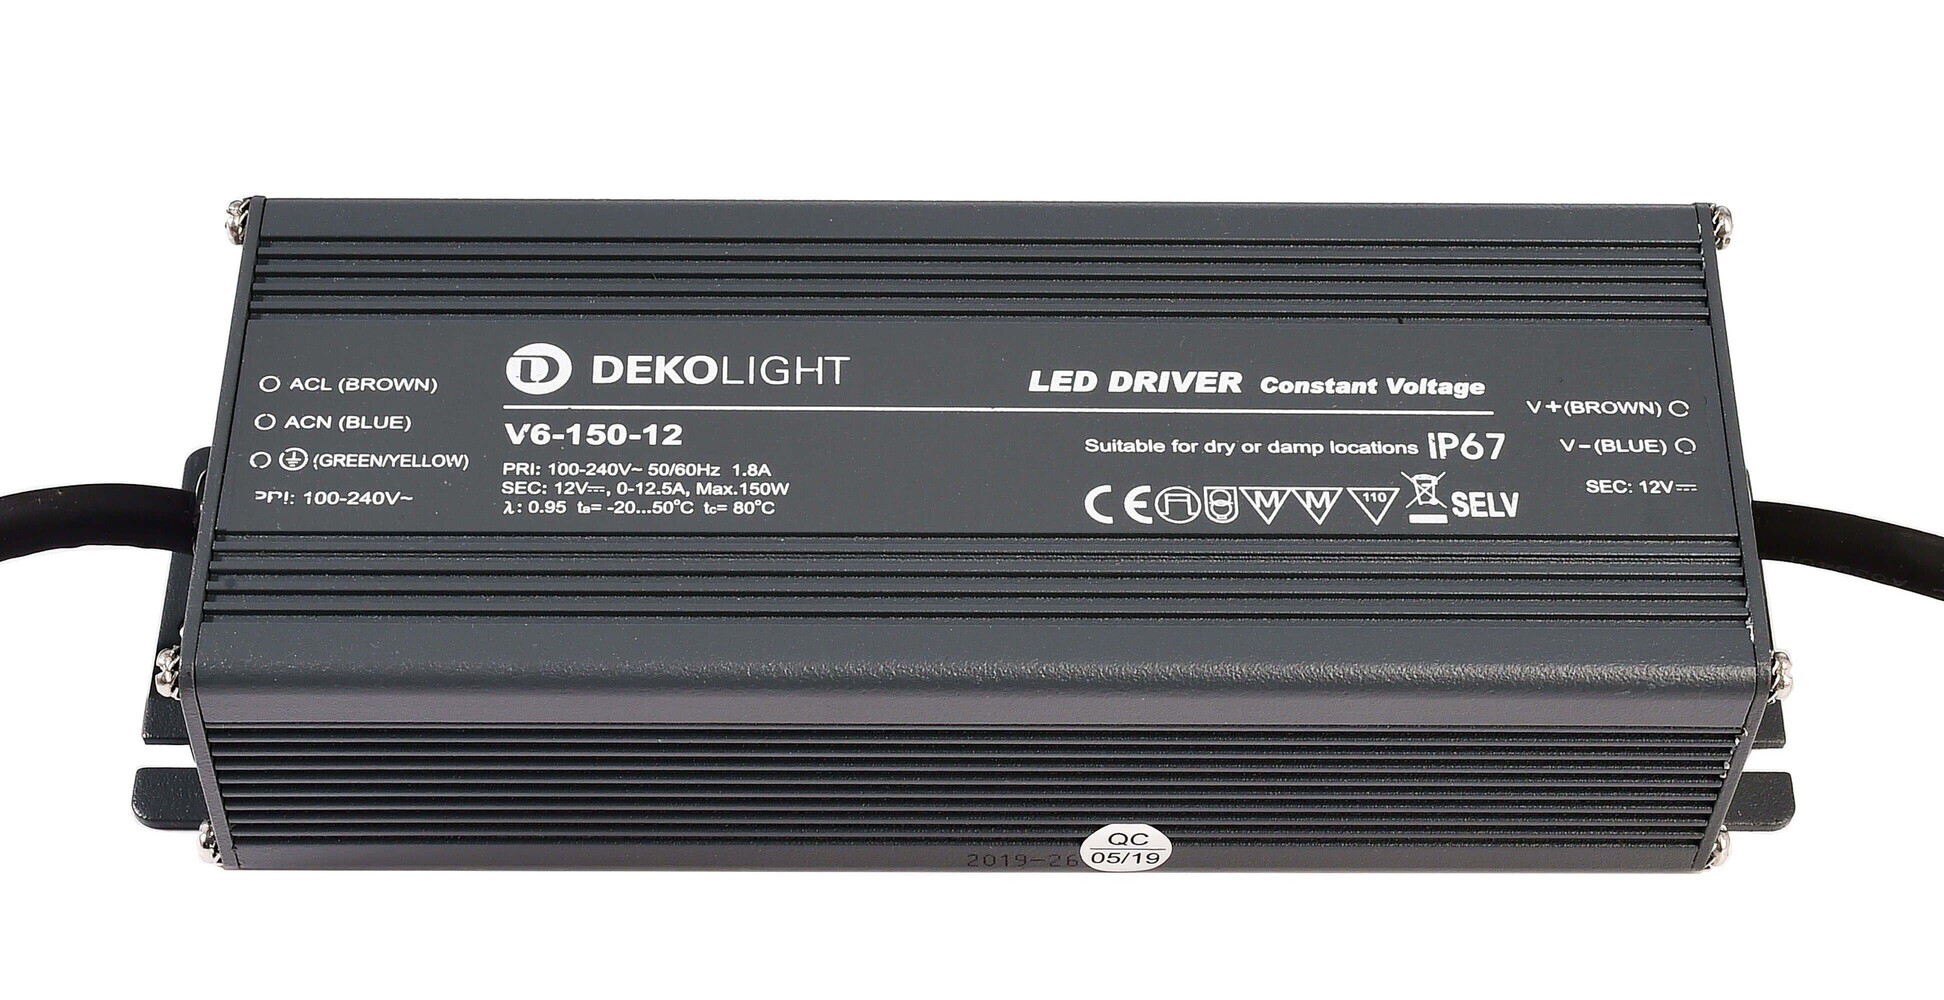 Qualitatives LED-Netzteil von Deko-Light in einer ausgesprochen stabilen Austattung